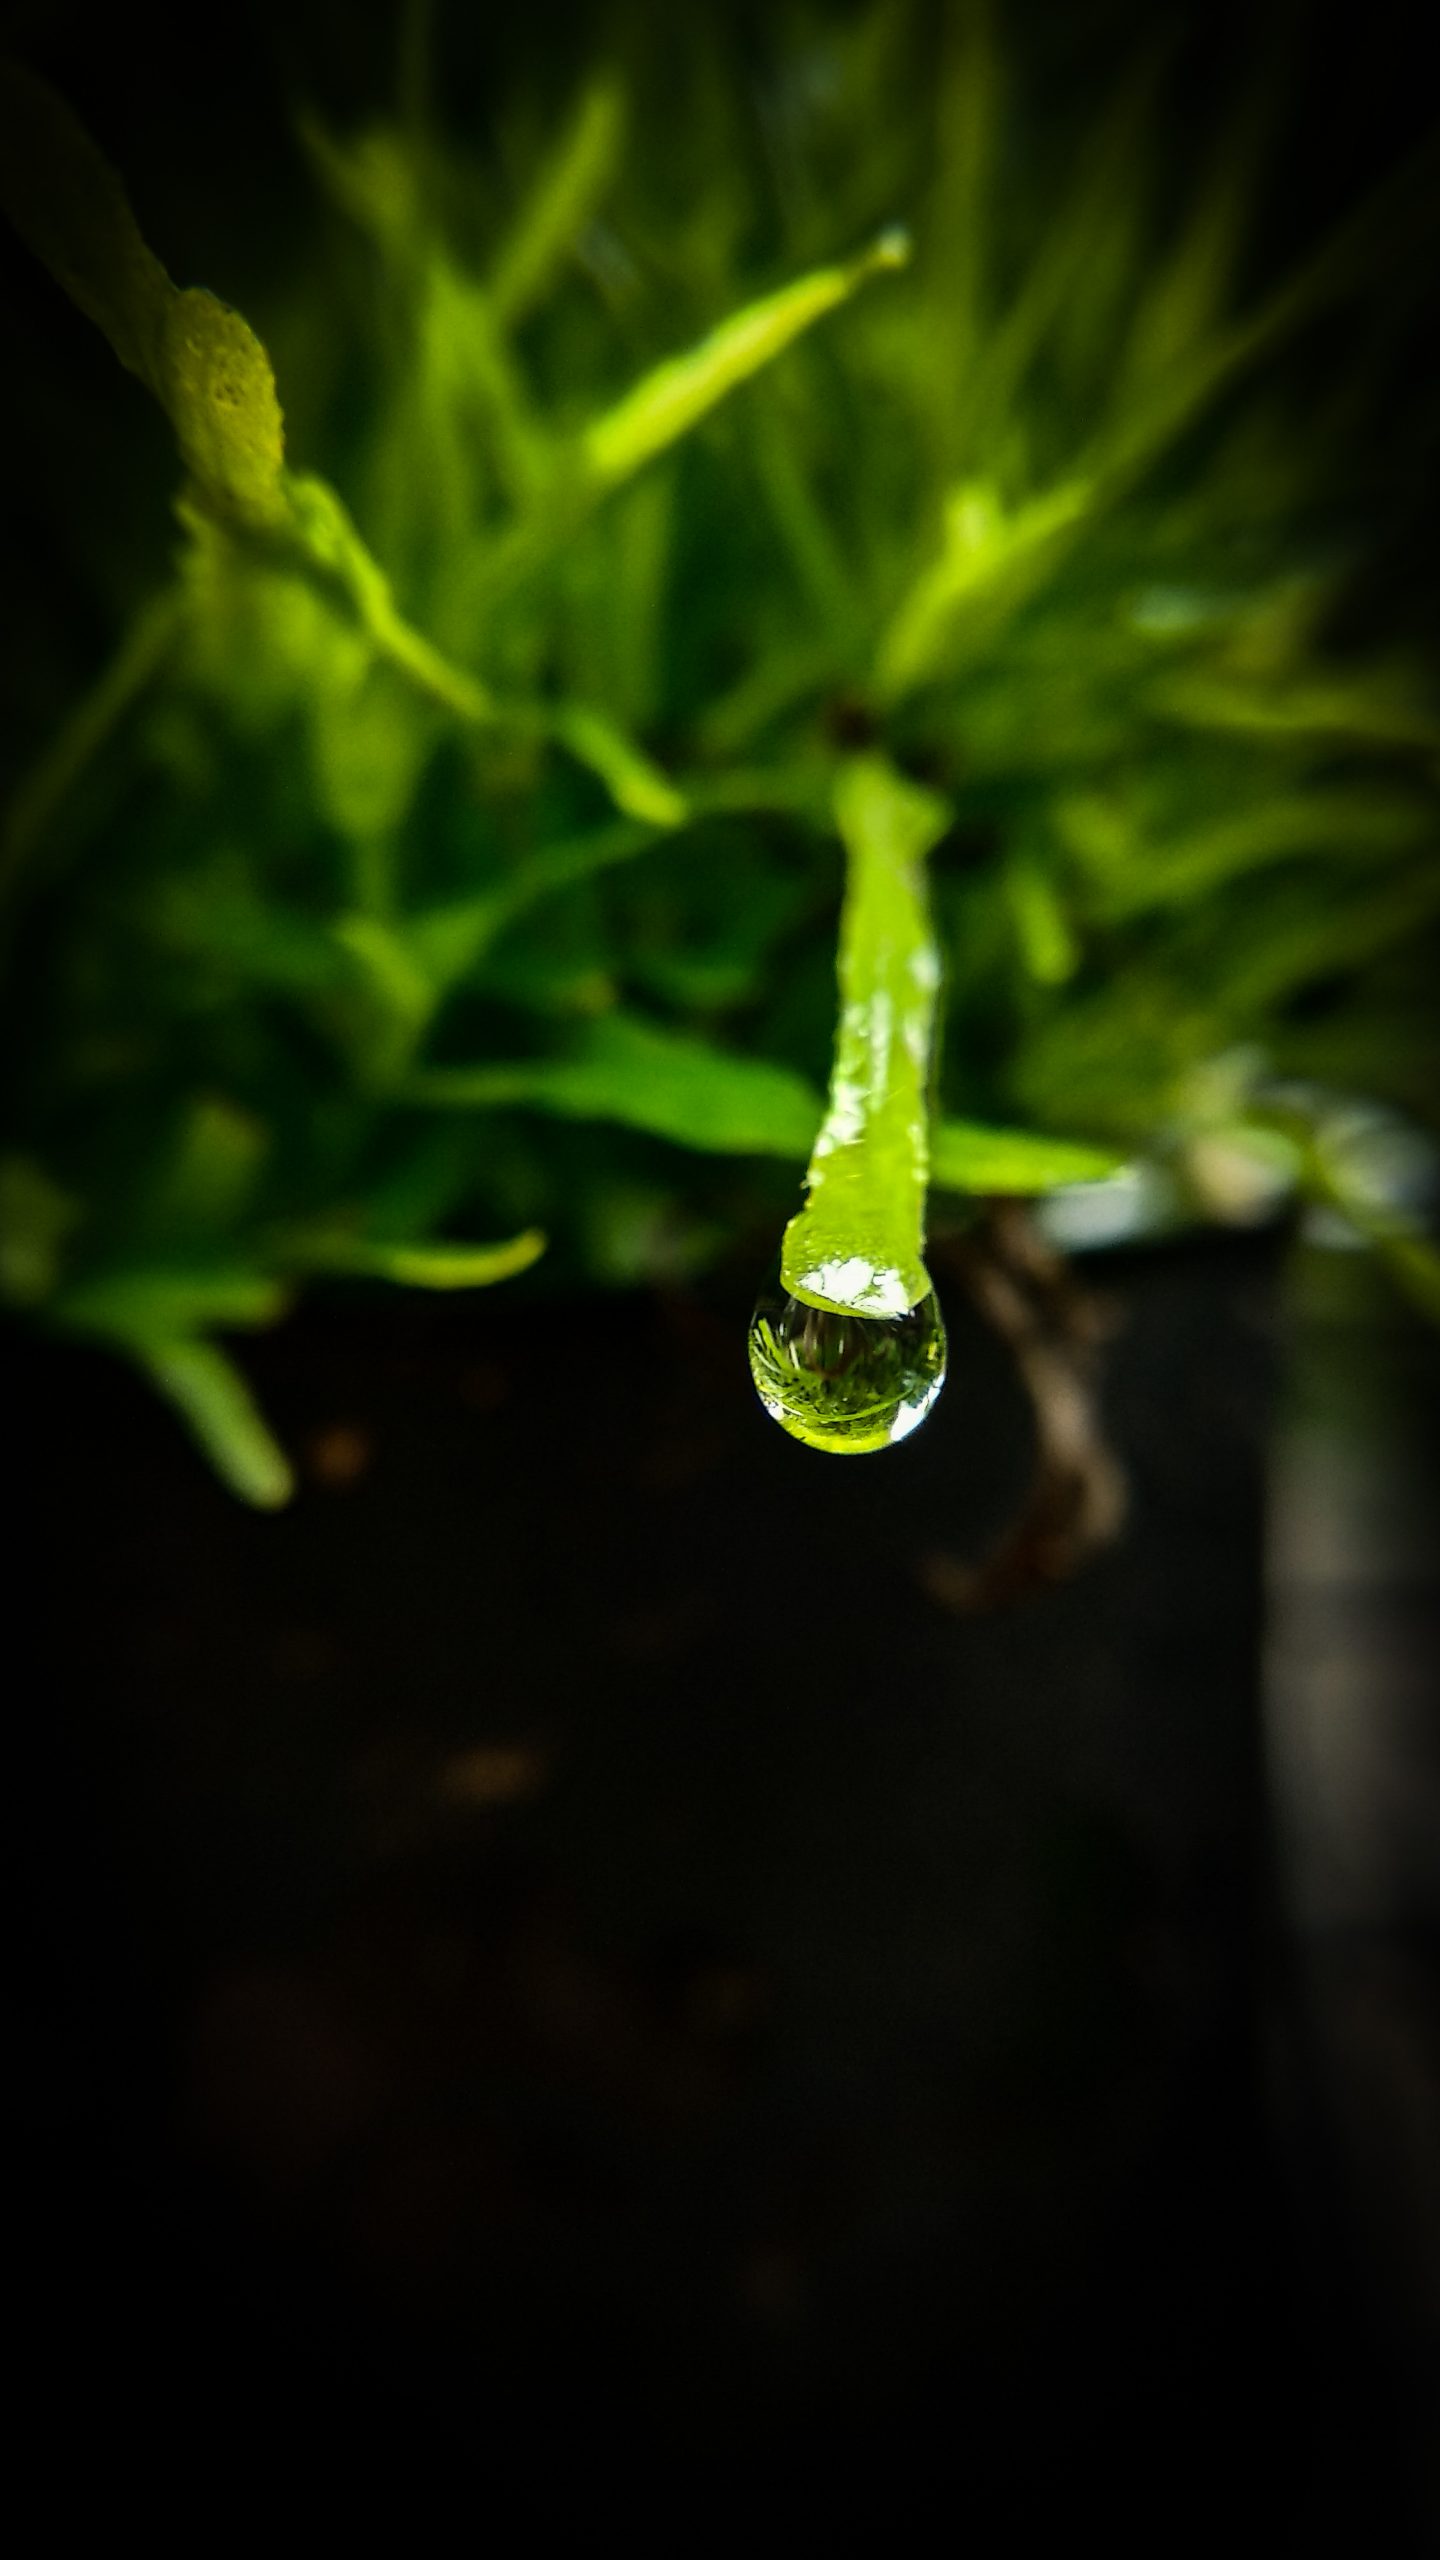 Raindrop on the leaf